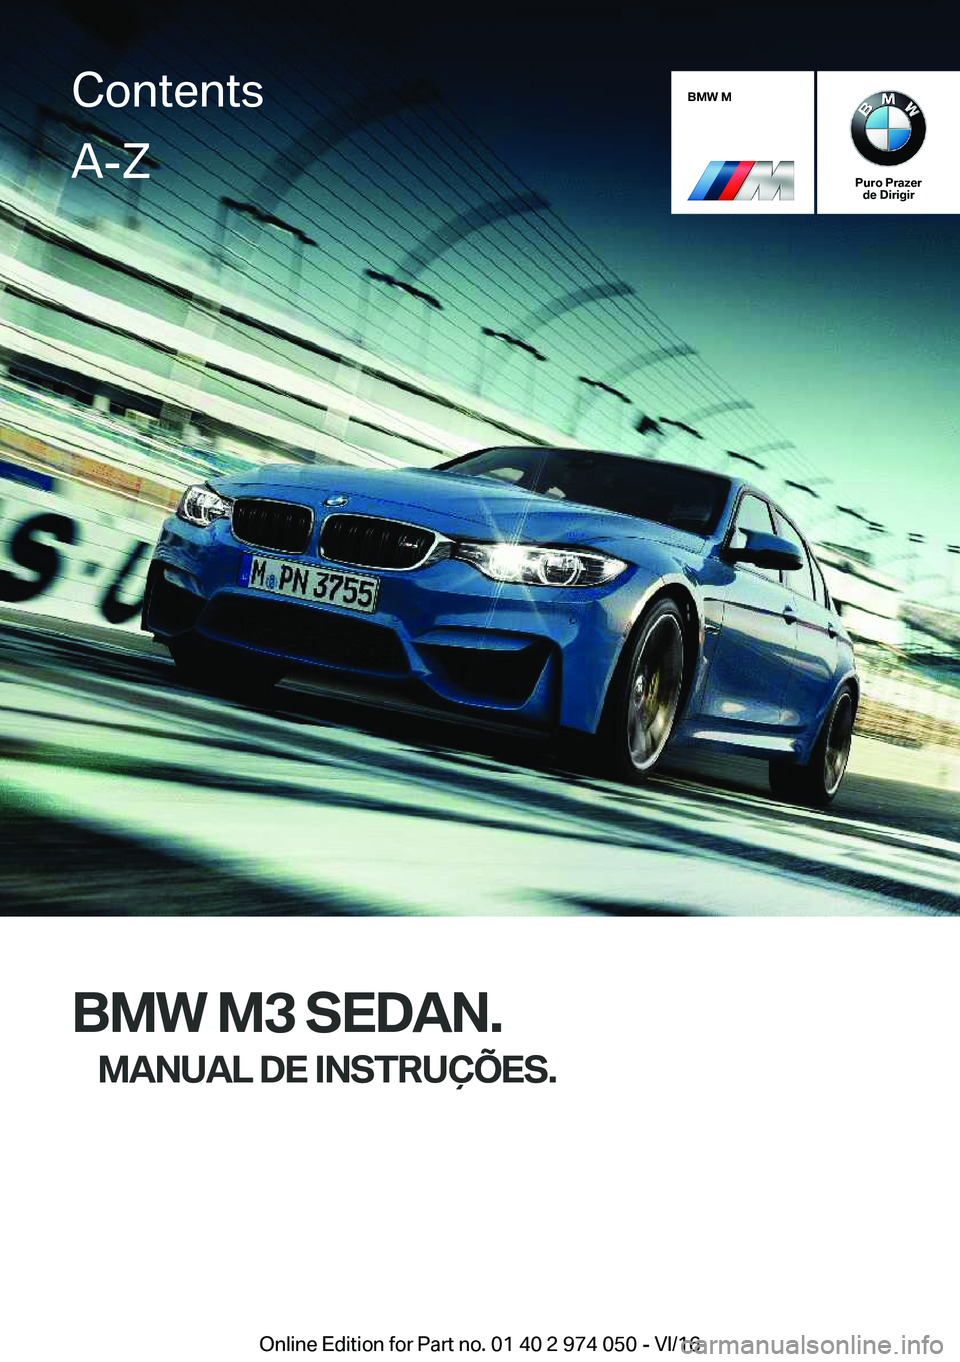 BMW M3 2017  Manual do condutor (in Portuguese) �B�M�W��M
�P�u�r�o��P�r�a�z�e�r�d�e��D�i�r�i�g�i�r
�B�M�W��M�3��S�E�D�A�N�.
�M�A�N�U�A�L��D�E��I�N�S�T�R�U�